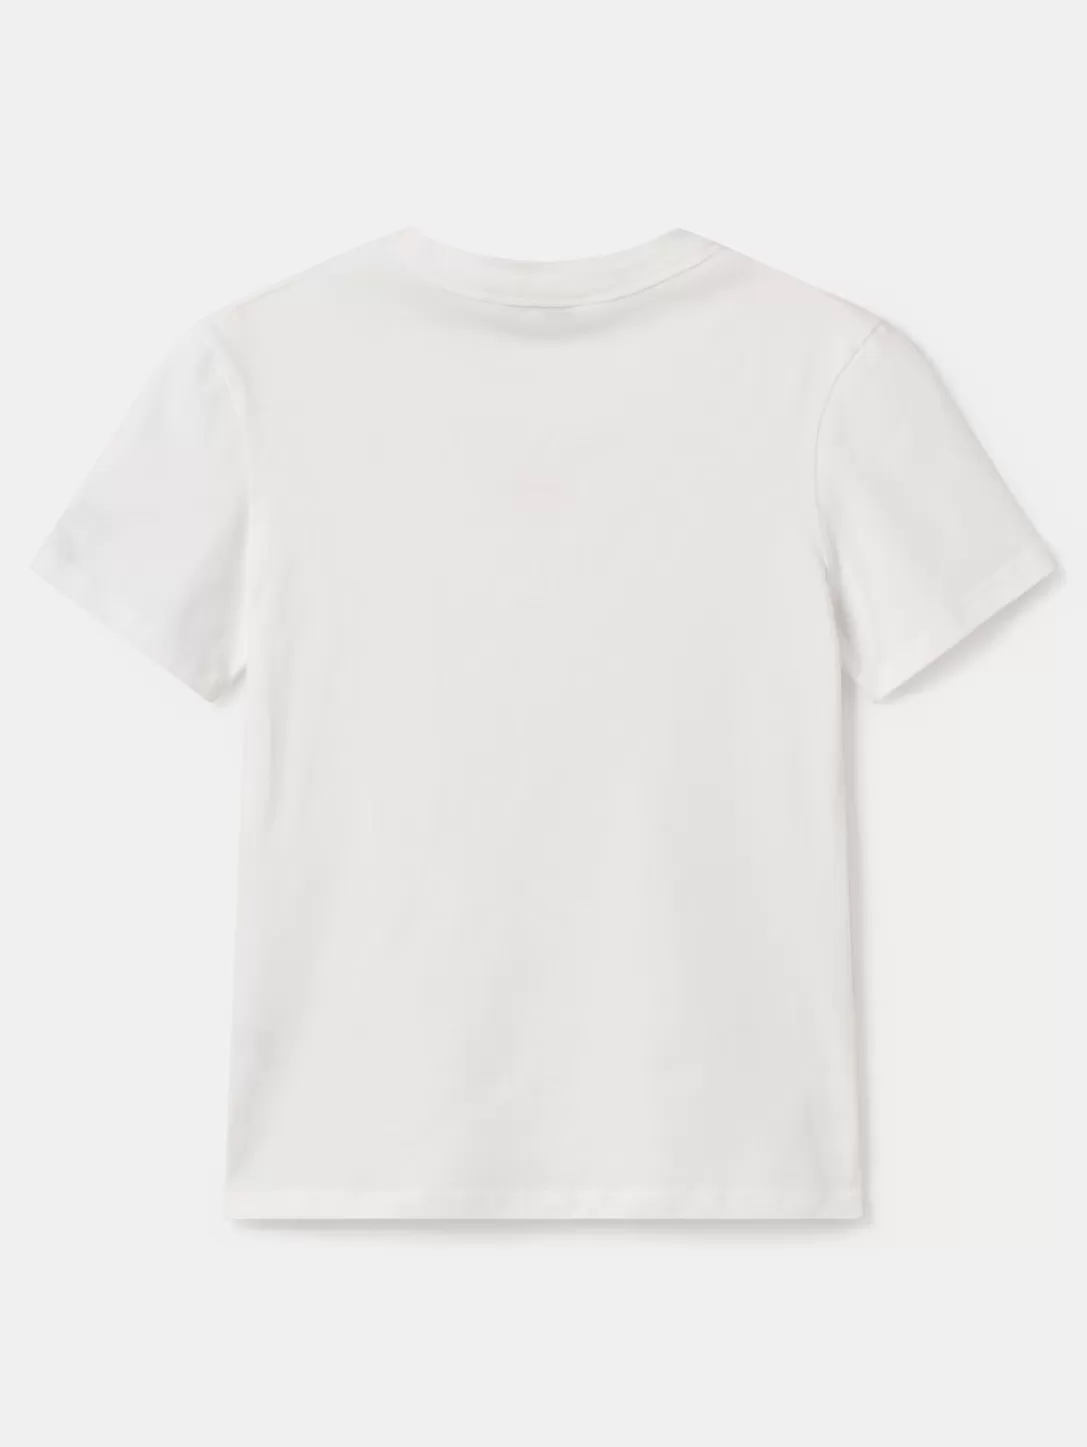 HOFF T-Shirt Cabrera White Best